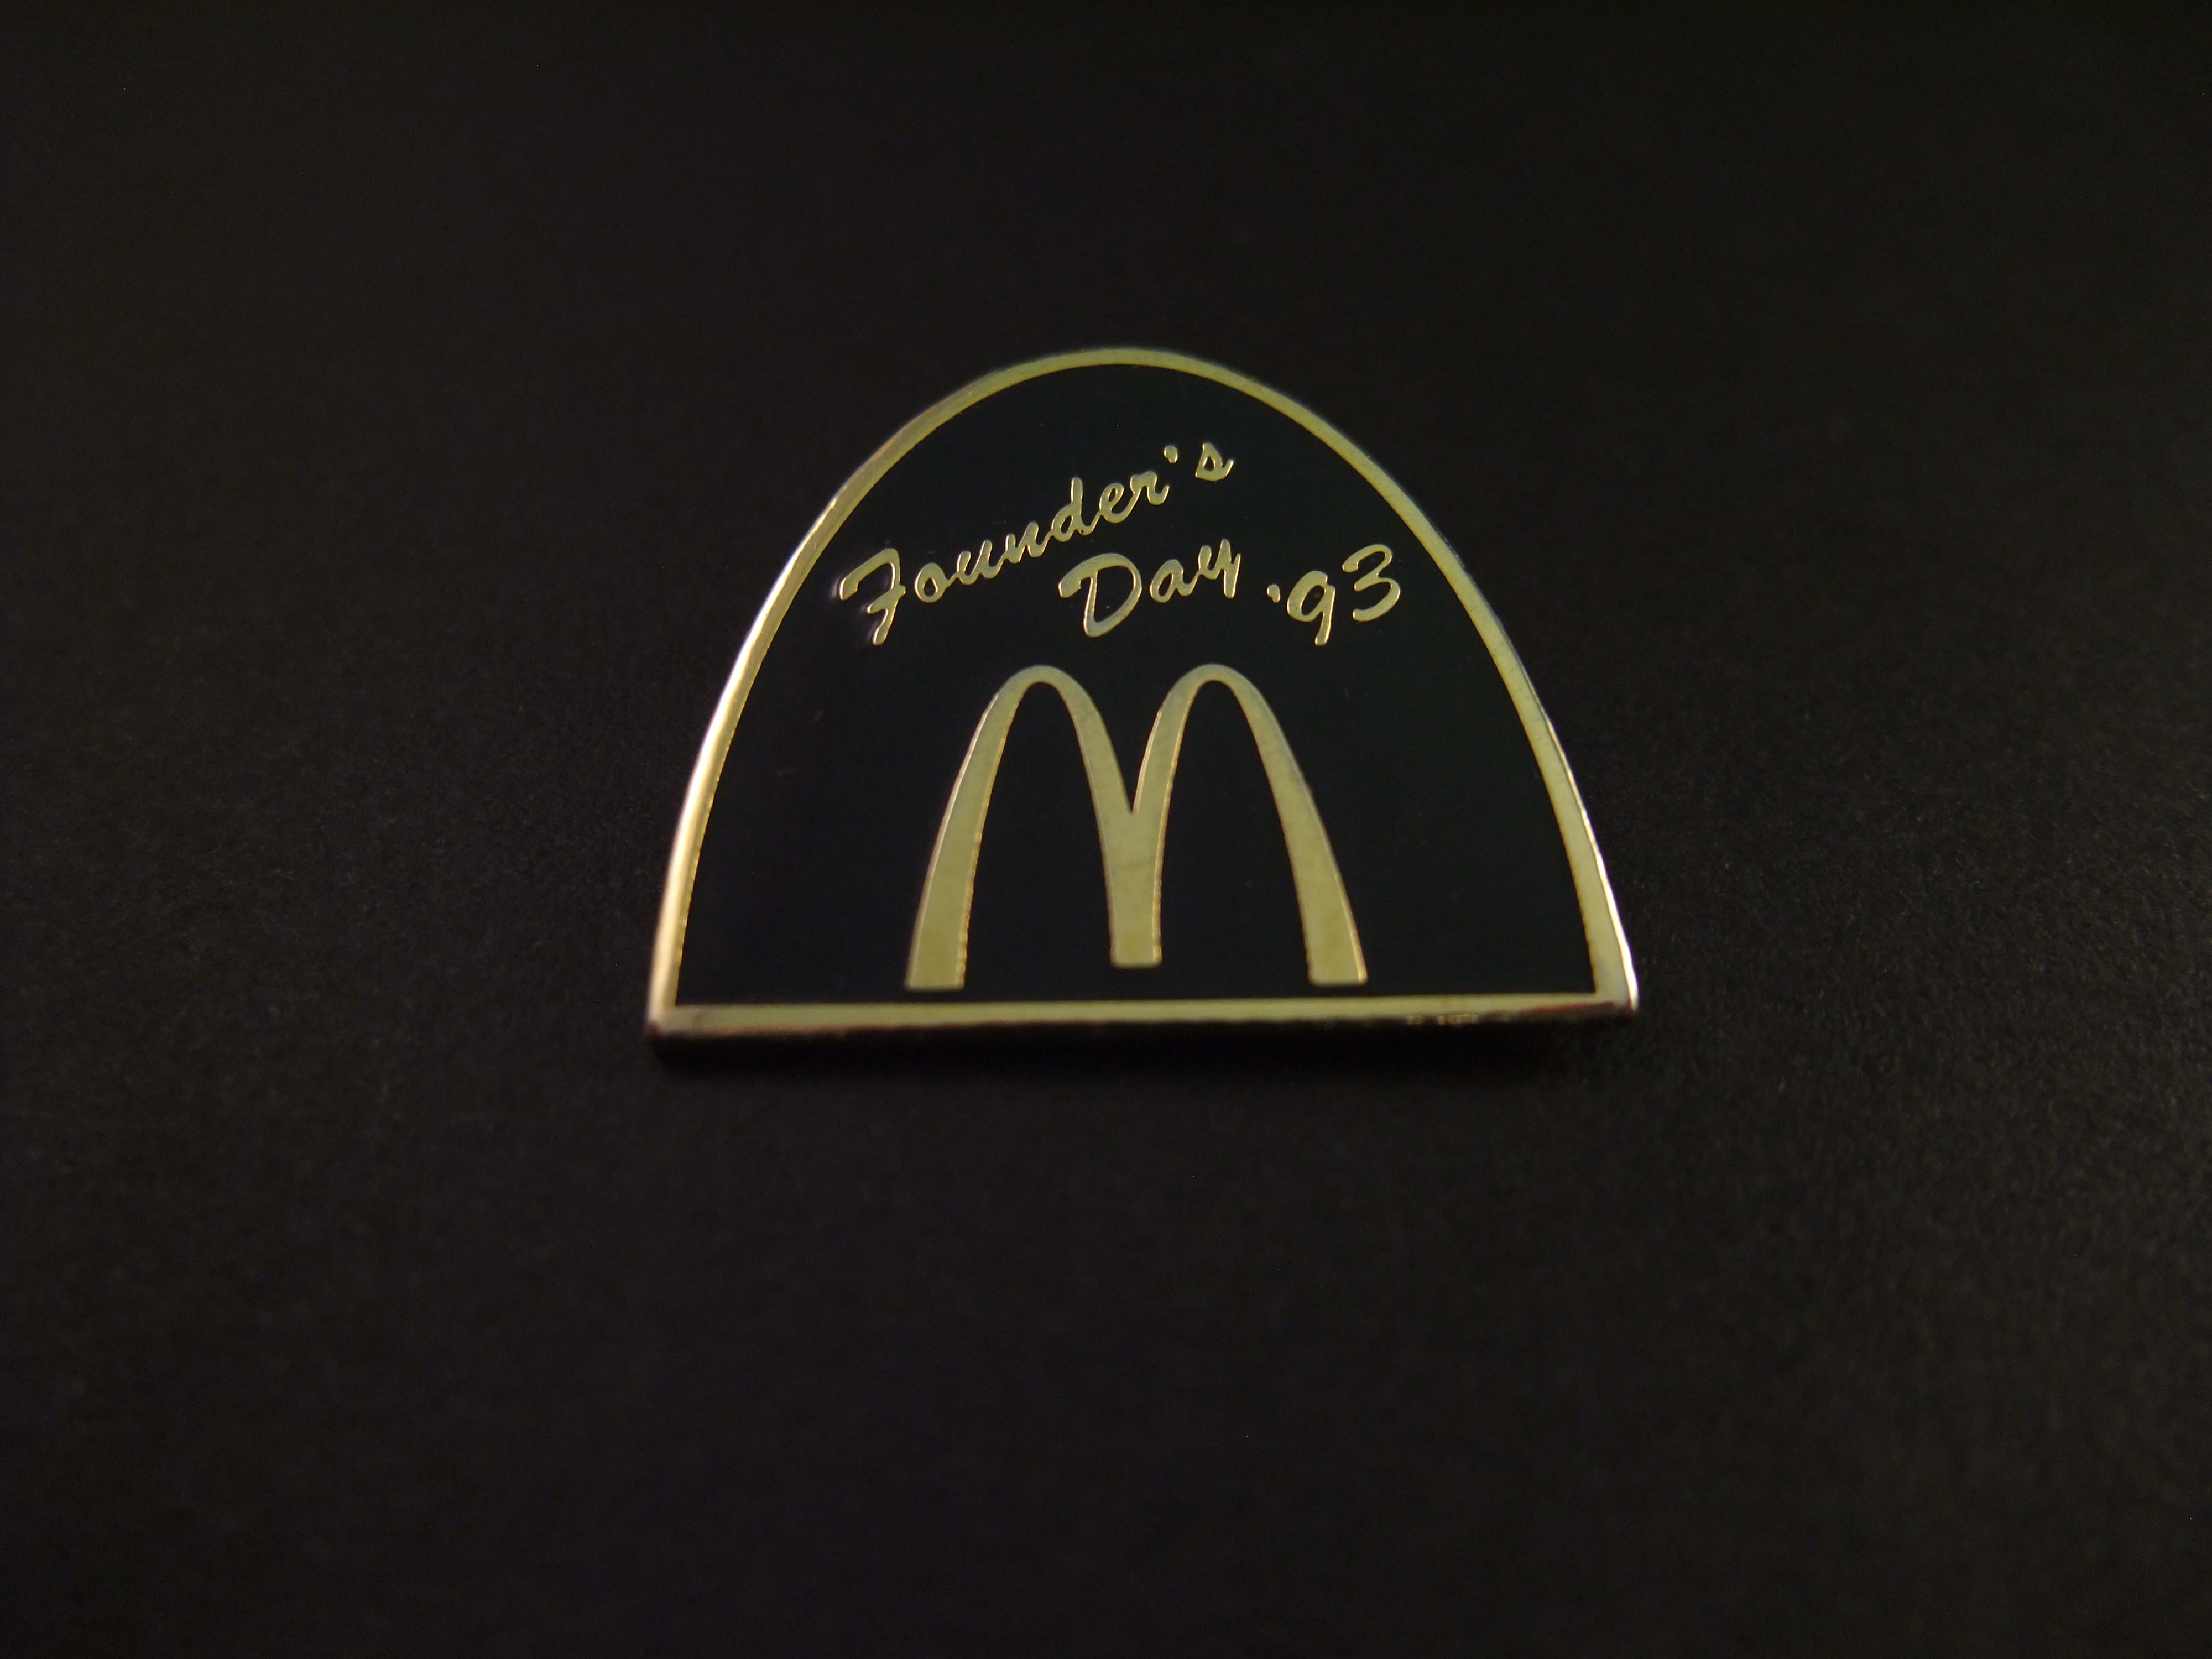 McDonald's Founder's Day. 1993 ( in oktober dag viert McDonald’s wereldwijd de geboortedag en het gedachtegoed van oprichter Ray Kroc